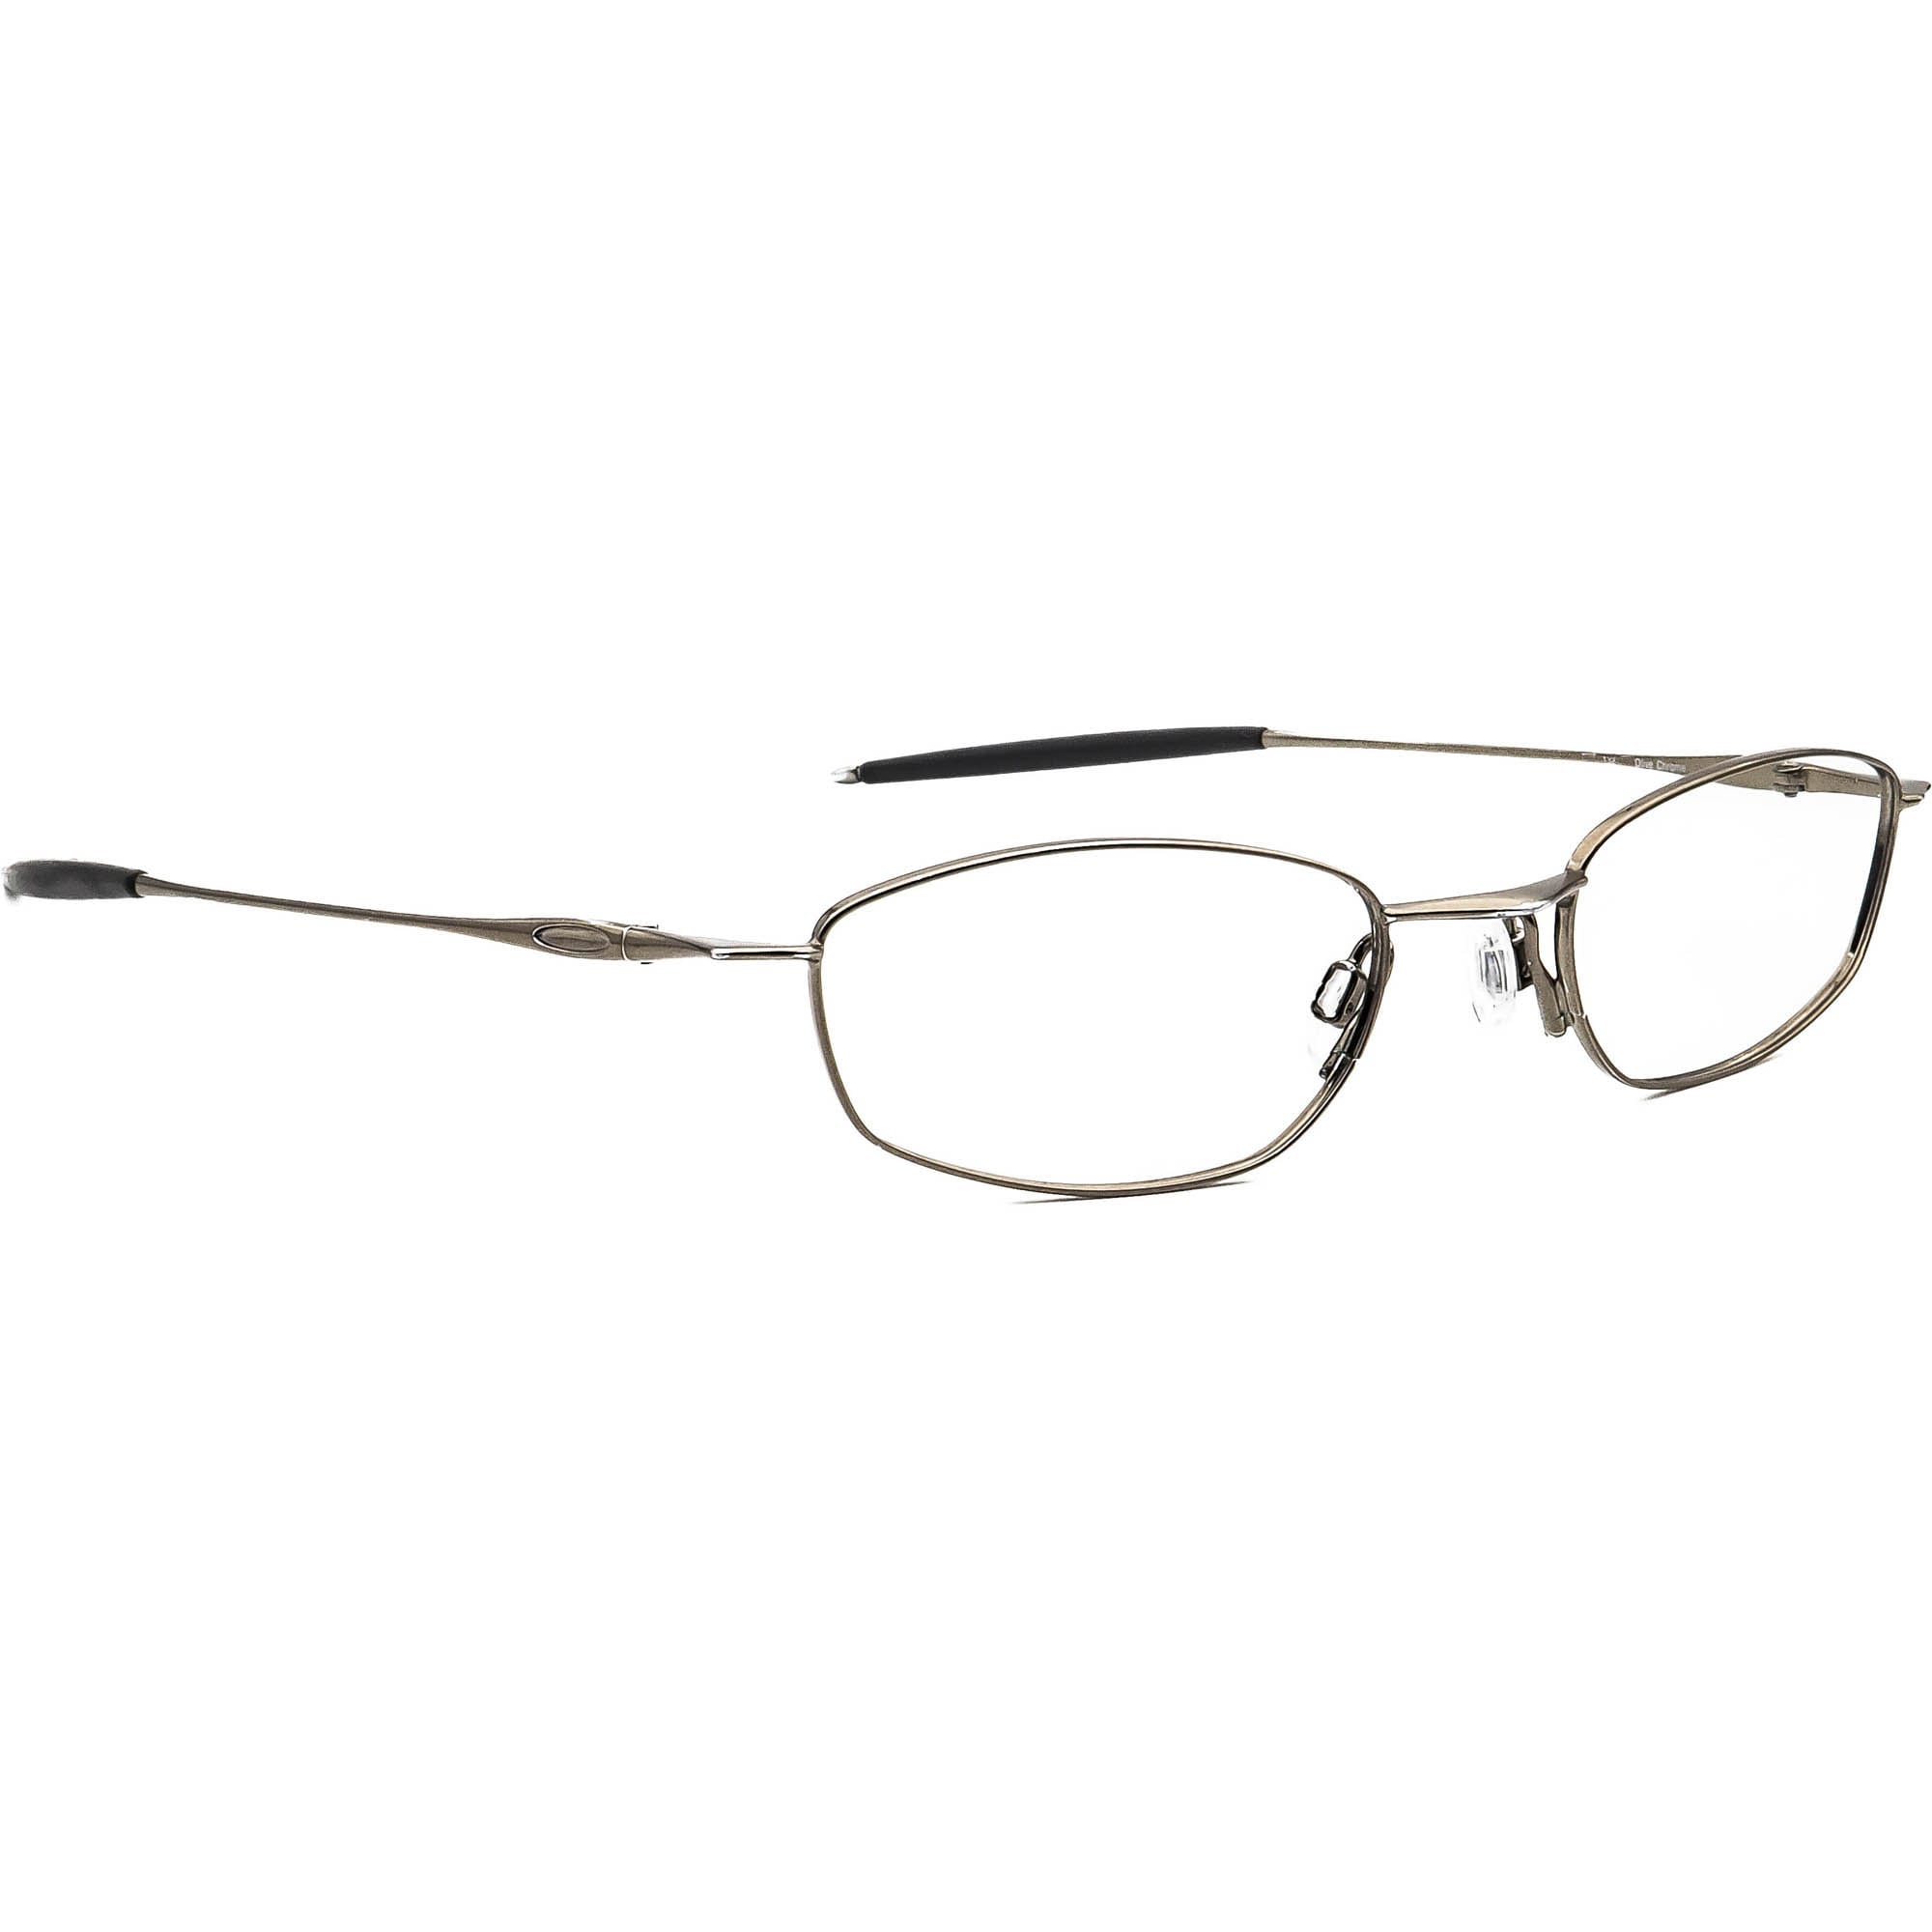 De er æggelederne forår Oakley Eyeglasses Thread 2.0 Olive Chrome Oval Metal Frame - Etsy